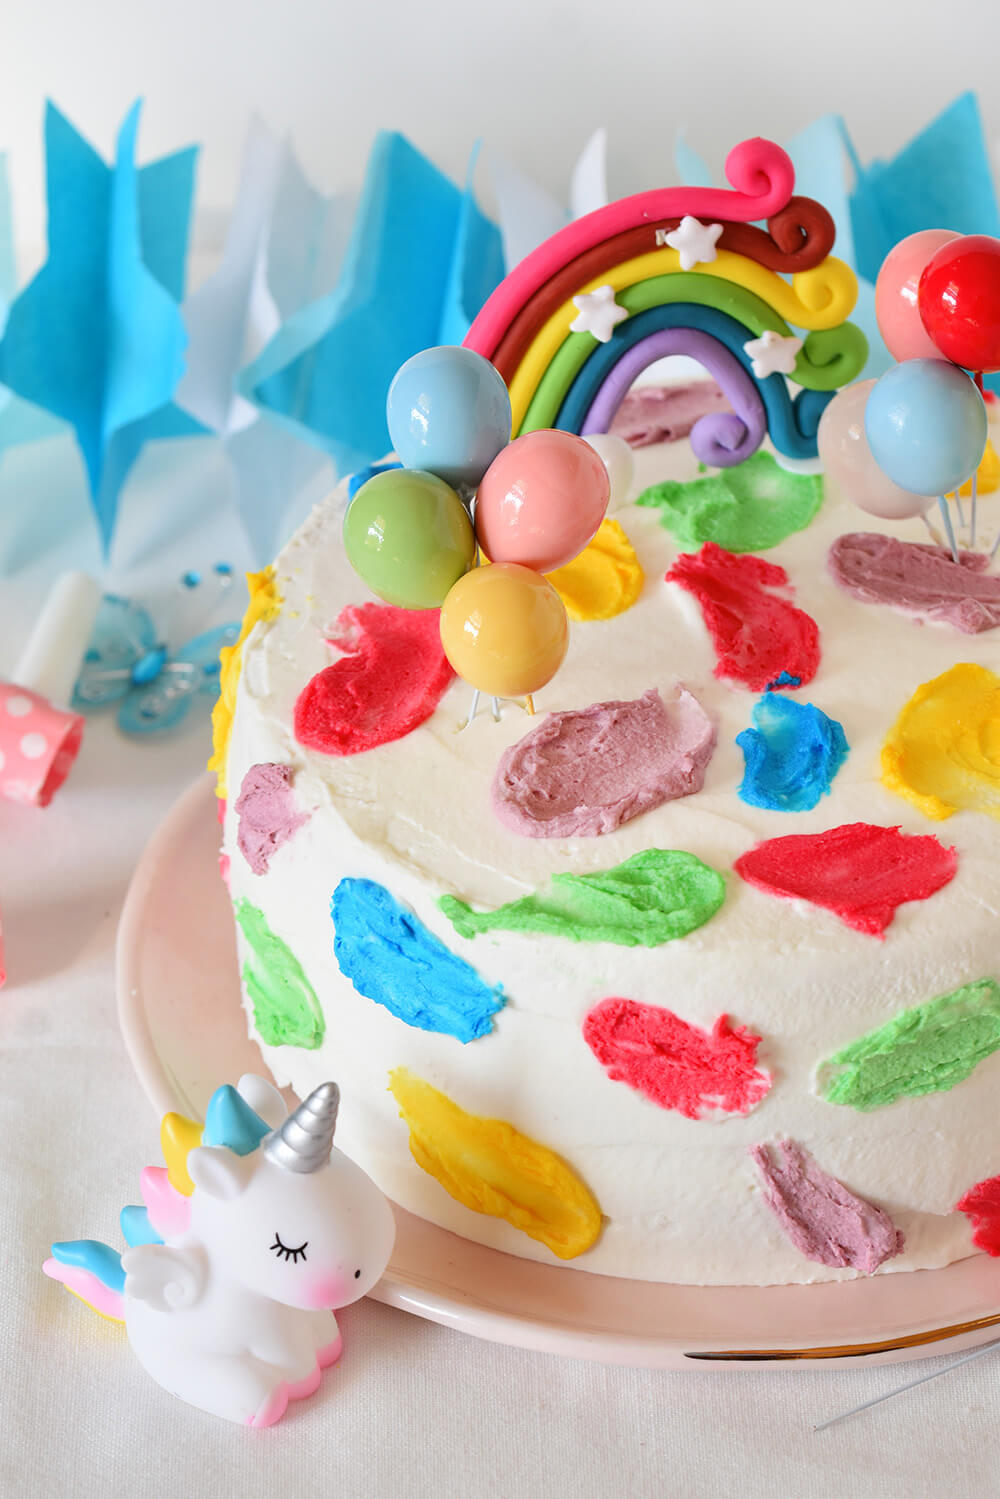 עוגת יום הולדת צבעונית - אורך 